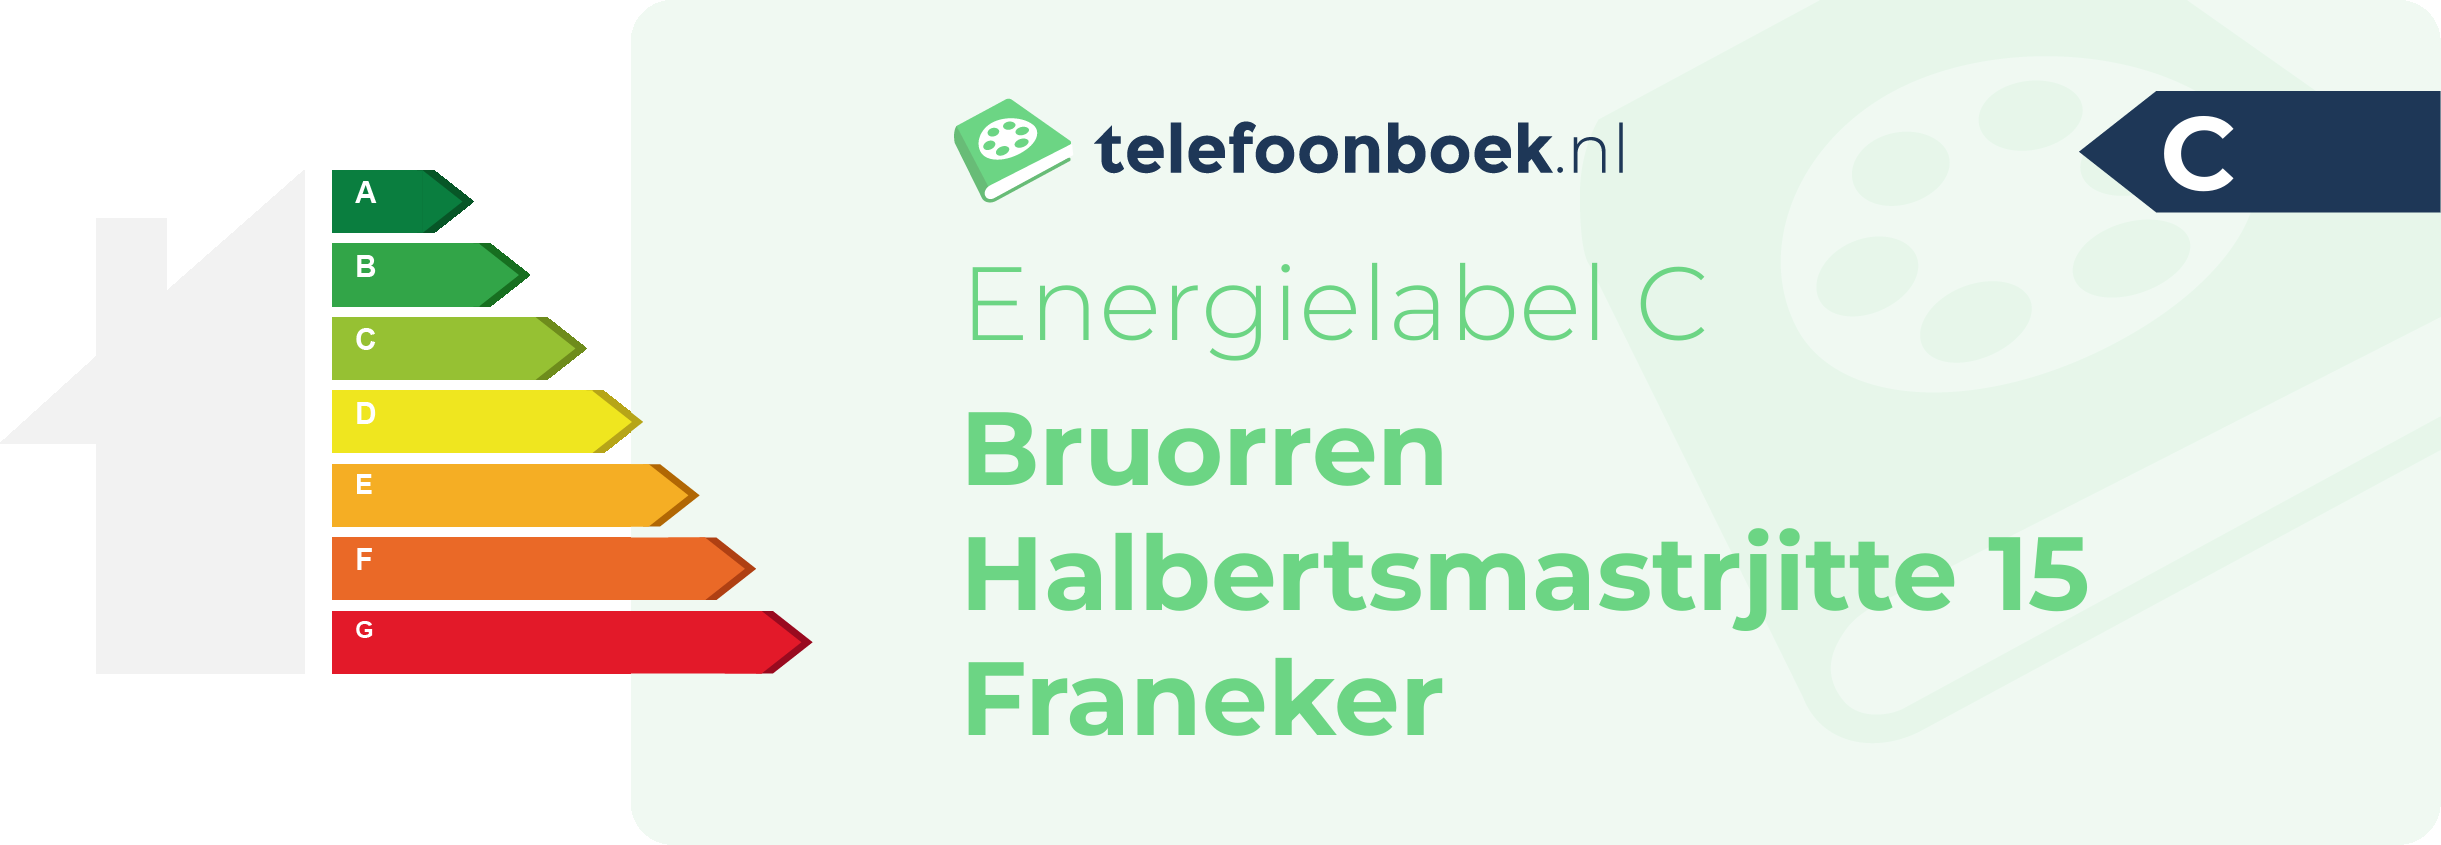 Energielabel Bruorren Halbertsmastrjitte 15 Franeker